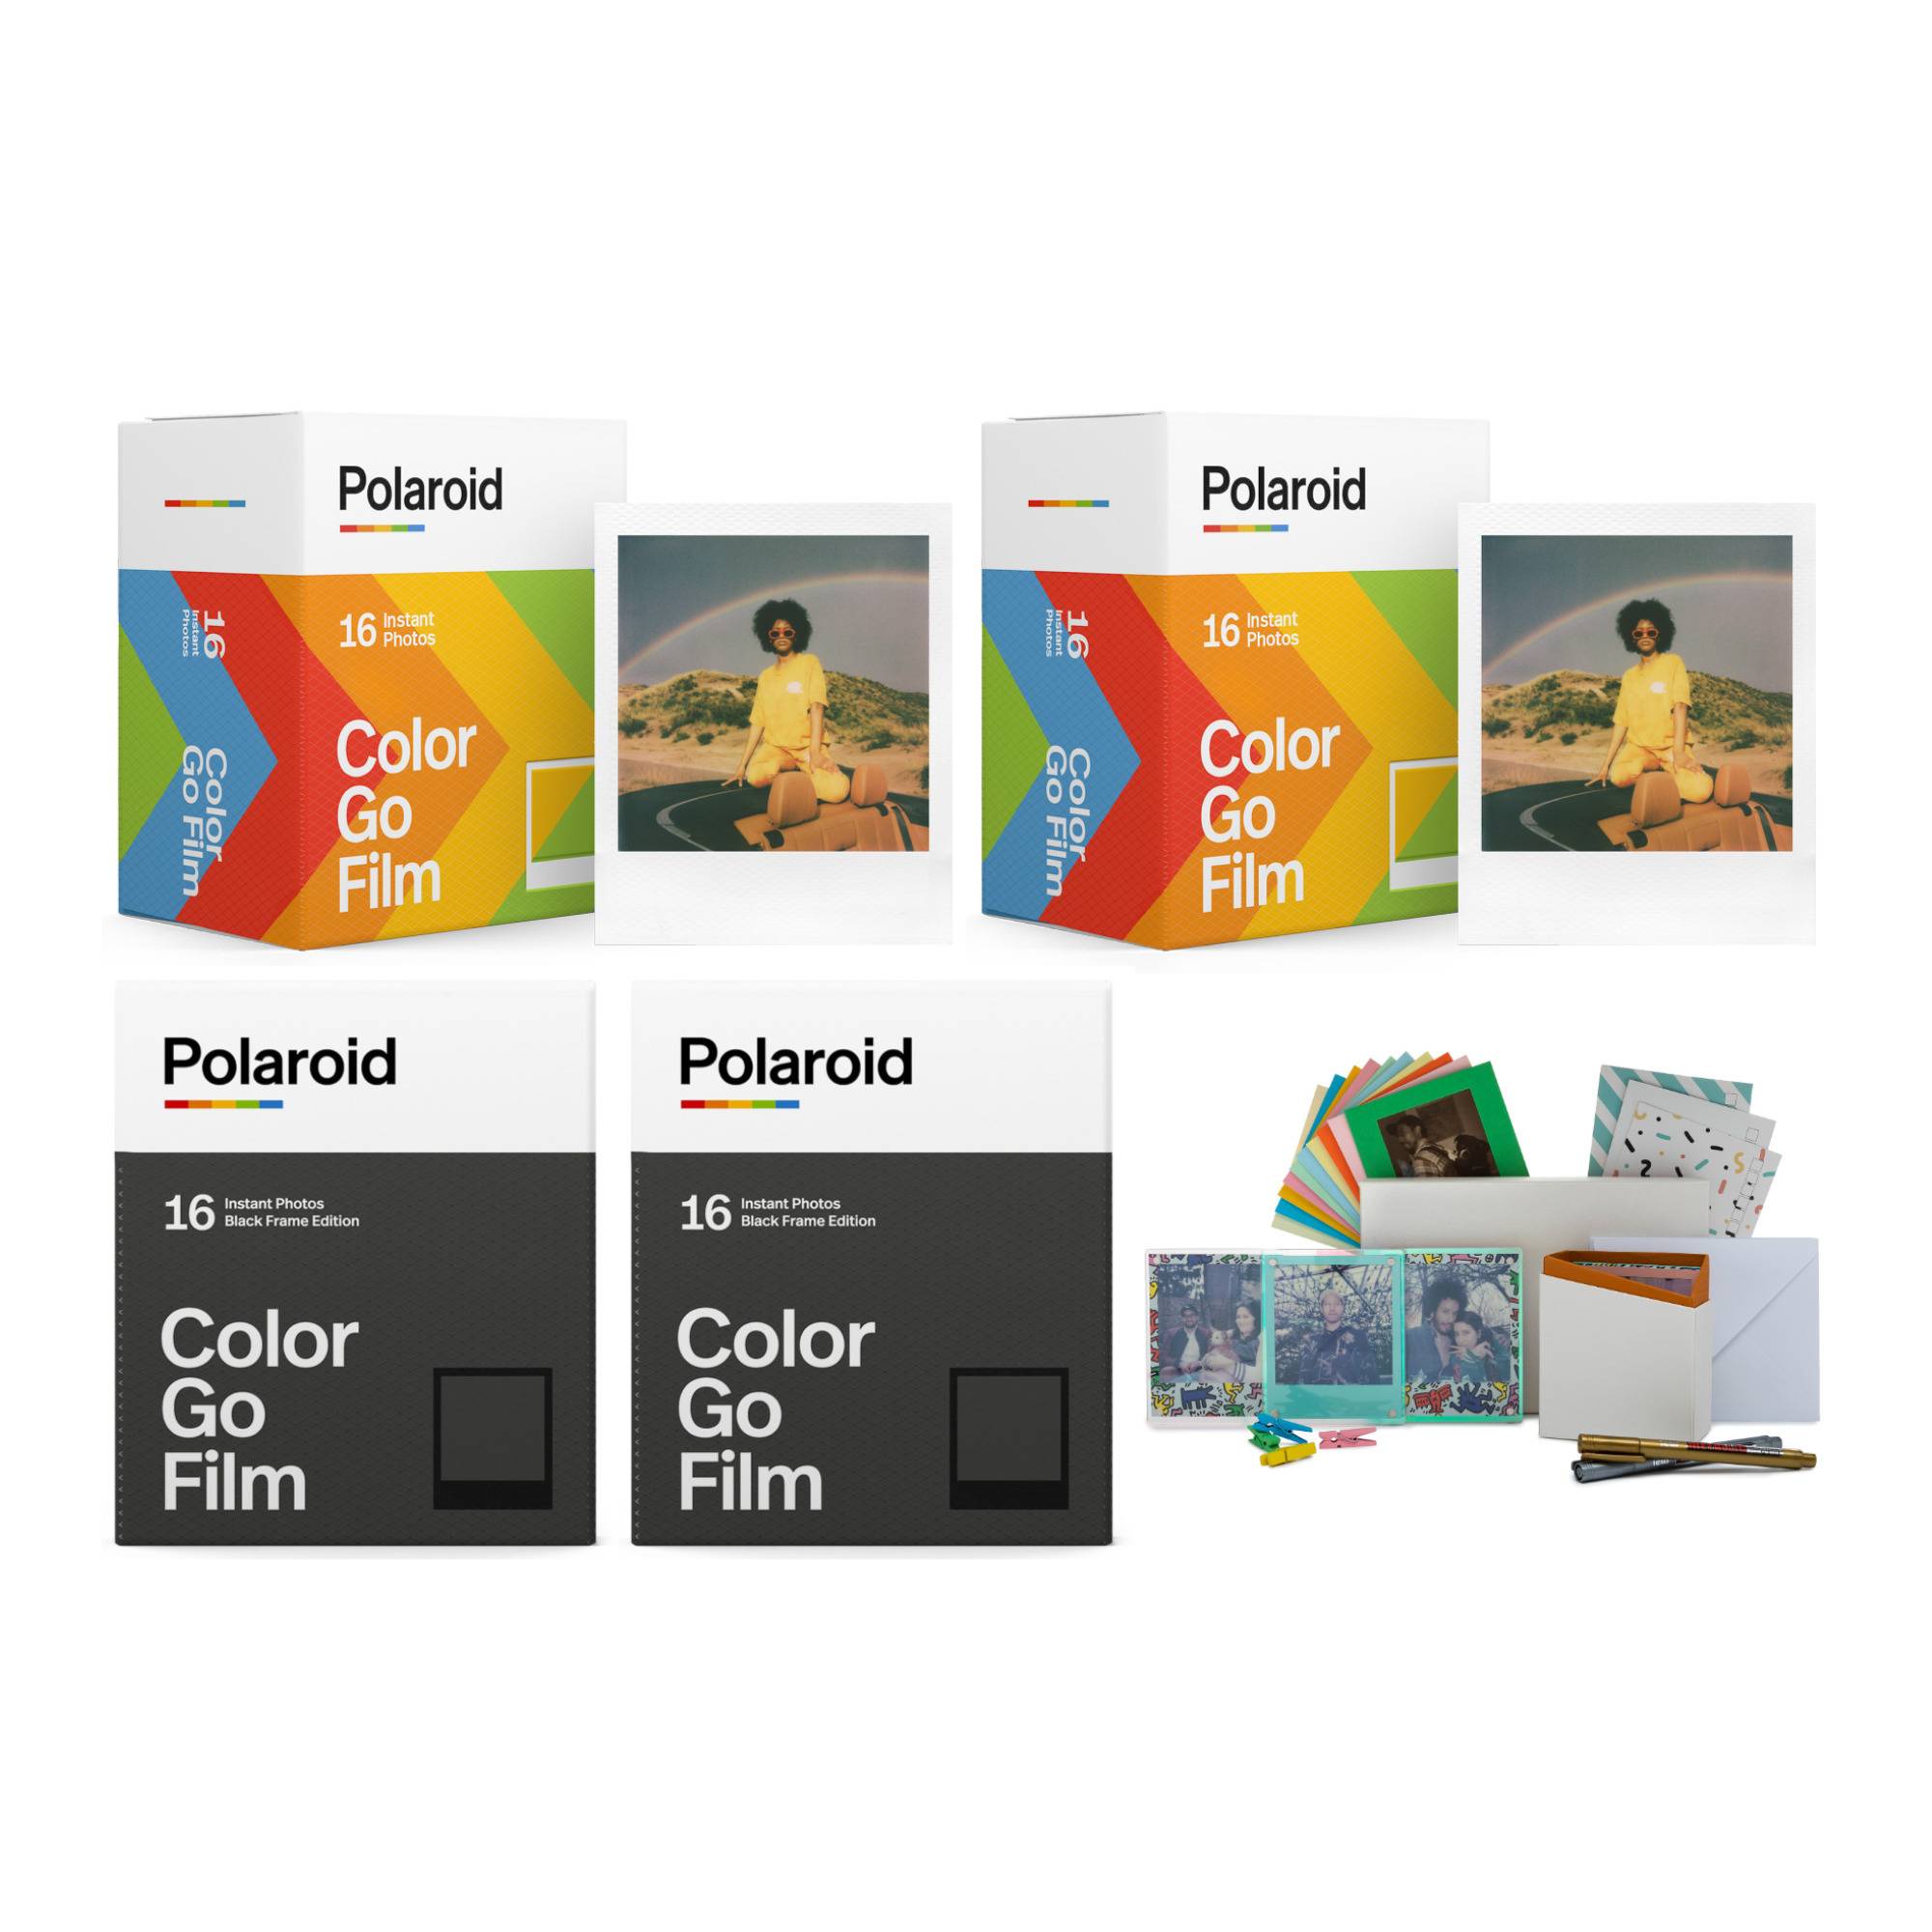 Polaroid Originals Go Color Film (Classic, Double-Pack) with Color Film (Black Frame, Double-Pack)